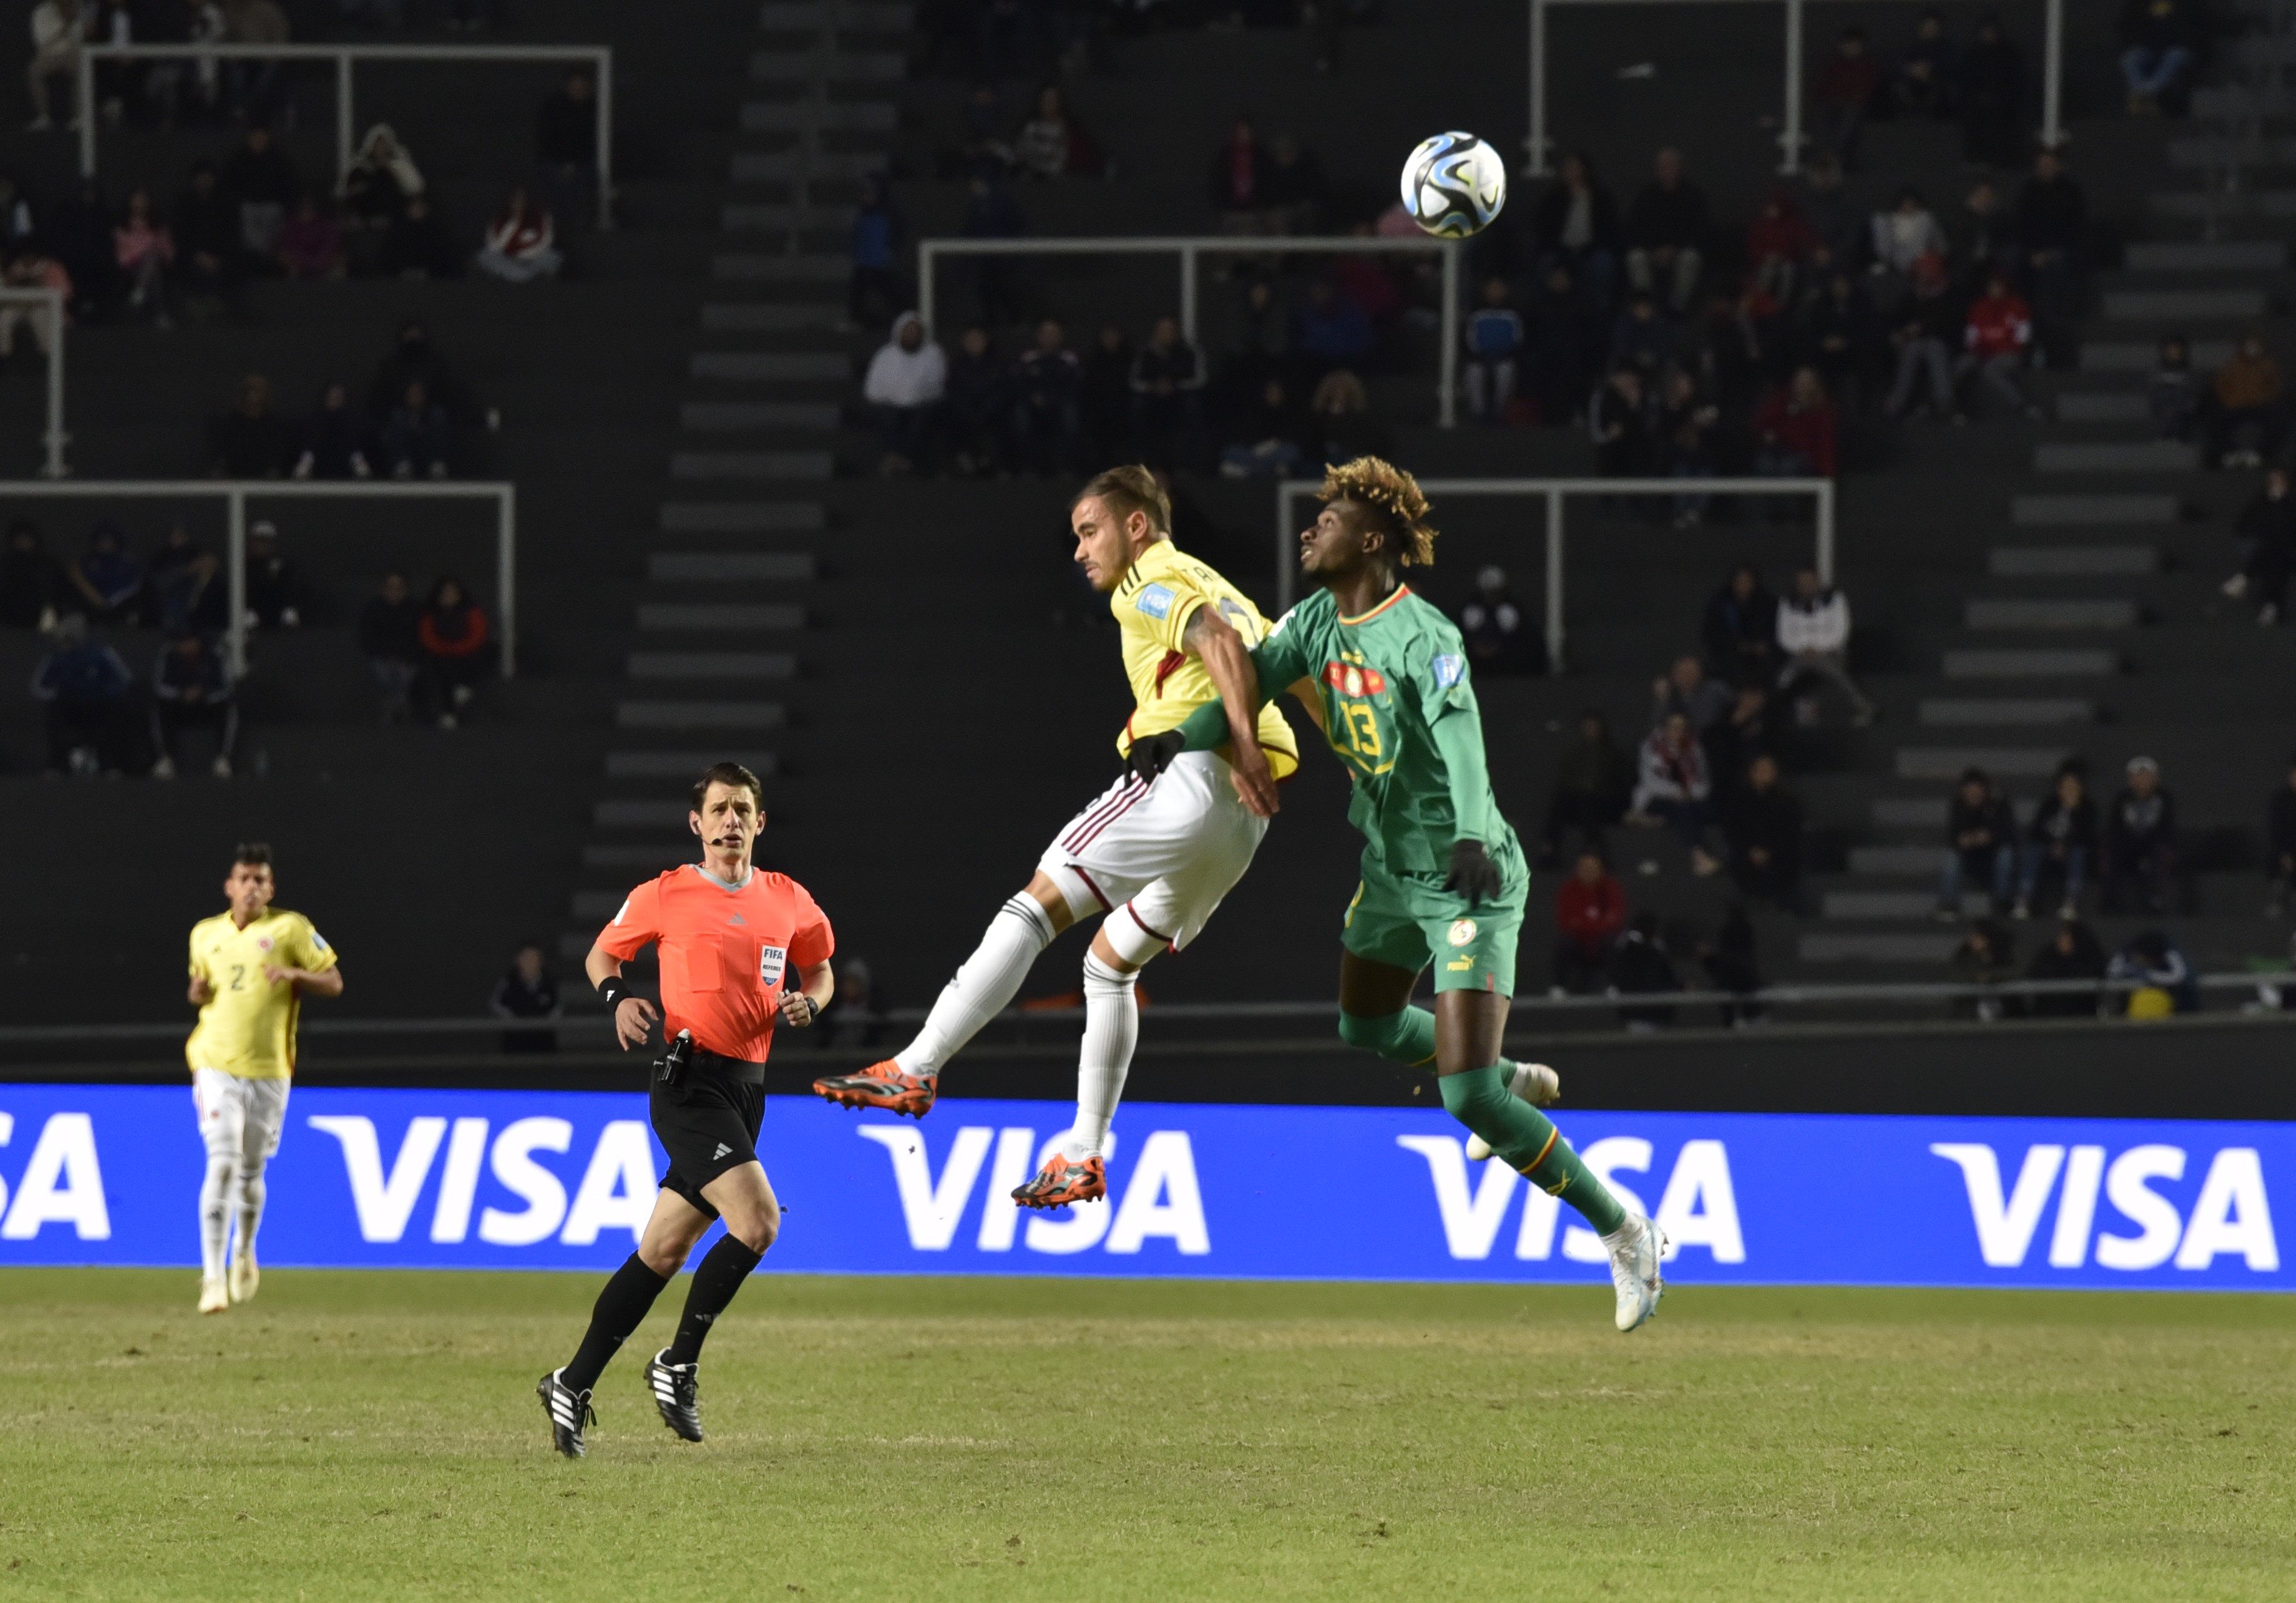 Colombia empató 1-1 con Senegal en La Plata por el mundial sub-20 de Argentina. Federación Colombiana de Fútbol